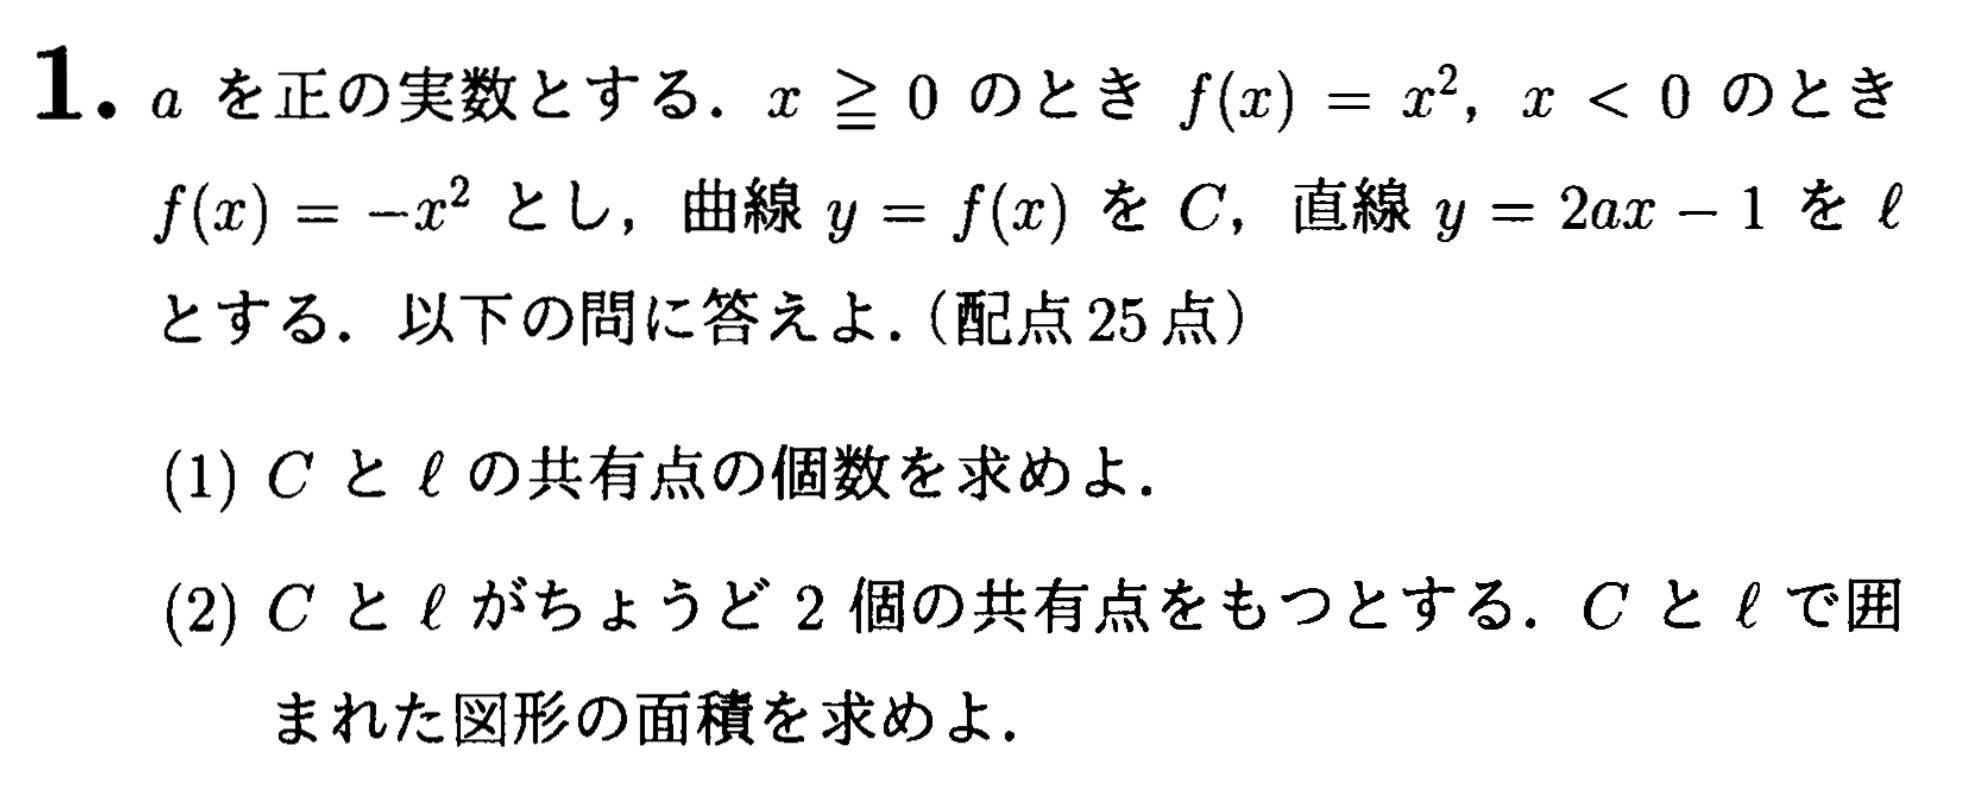 神戸大学入試文系数学2022年(令和4年)過去問題